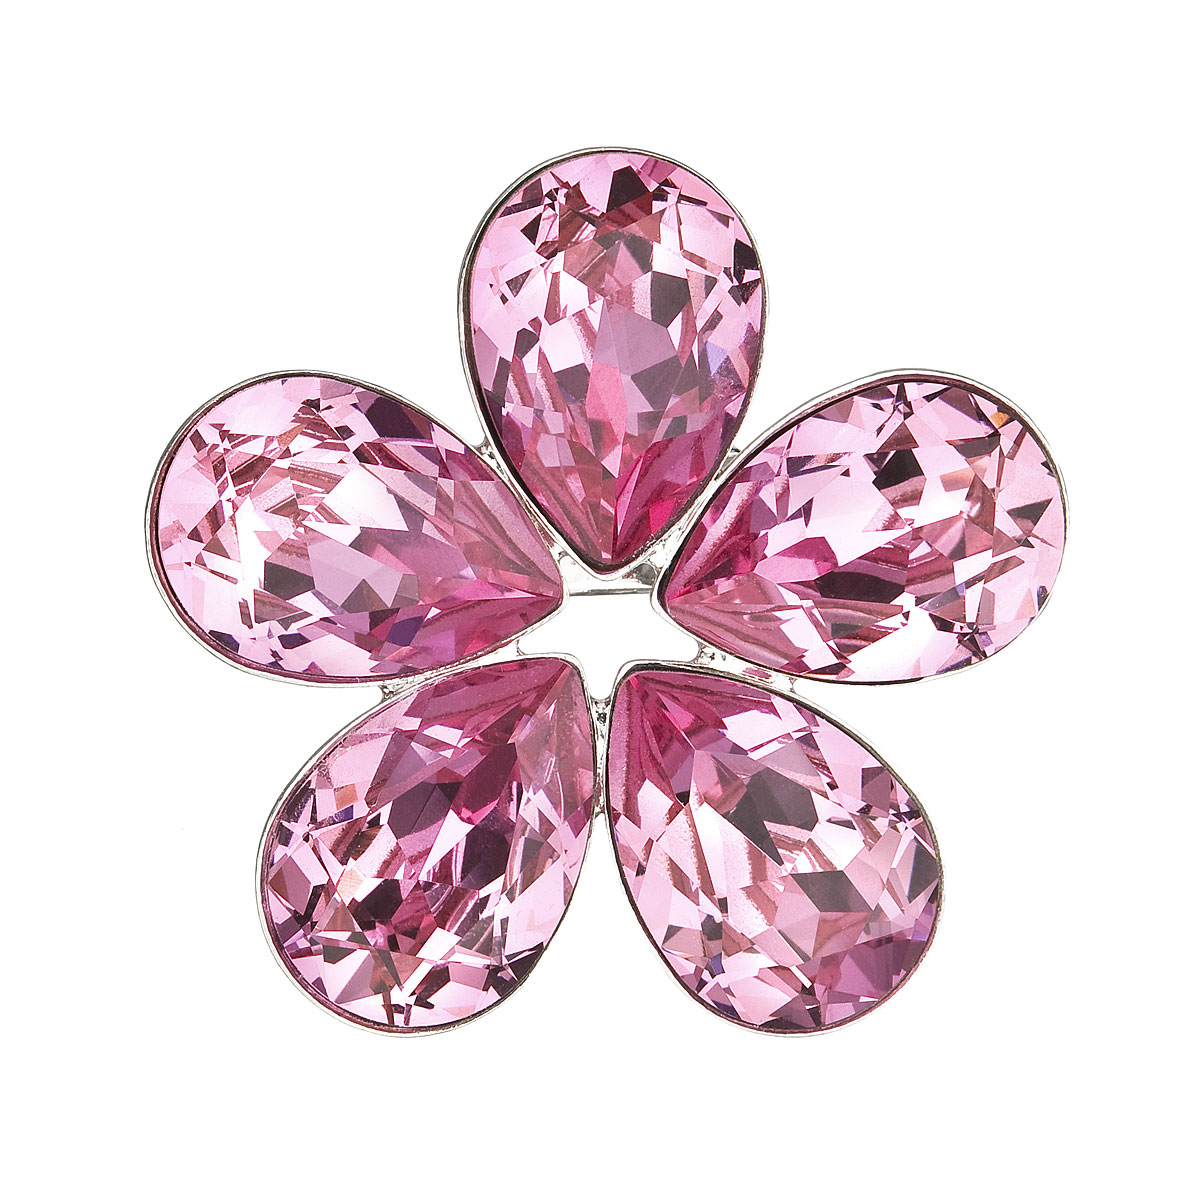 Evolution Group Brož bižuterie se Swarovski krystaly růžová kytička 58003.3 rose